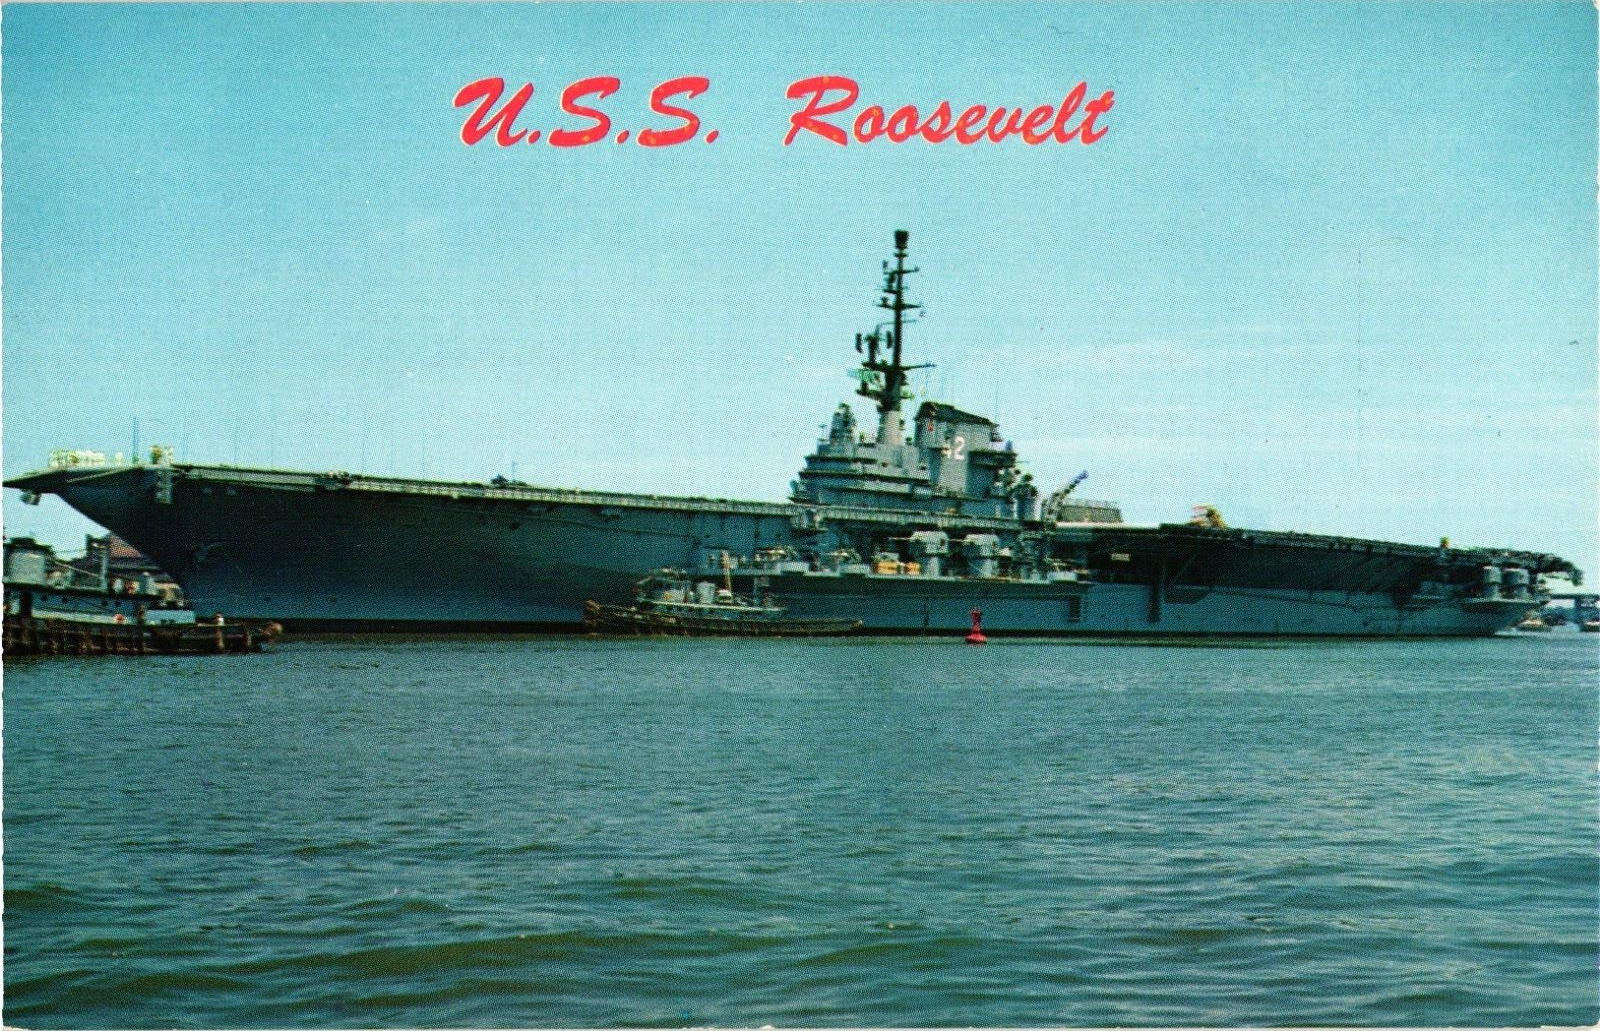 U.S.S. Roosevelt Warship Vintage Postcard